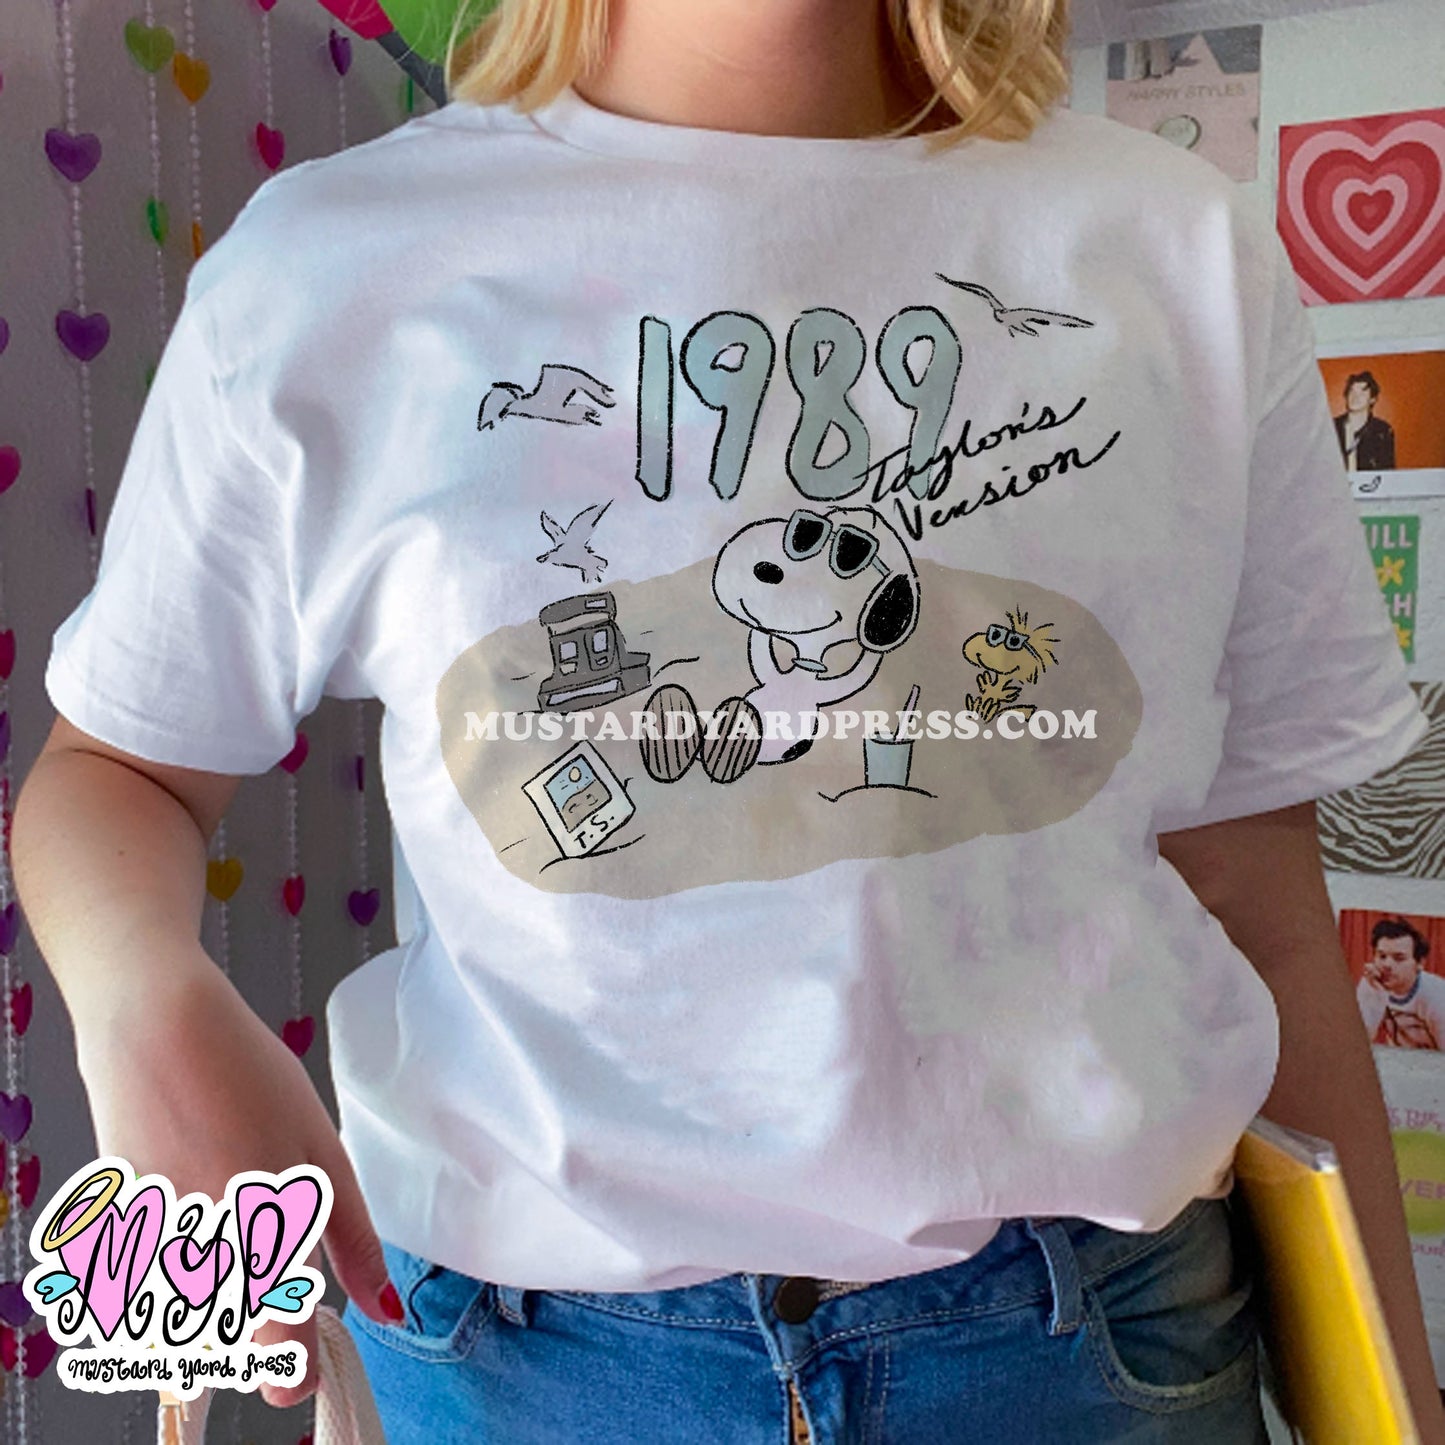 '89 t-shirt